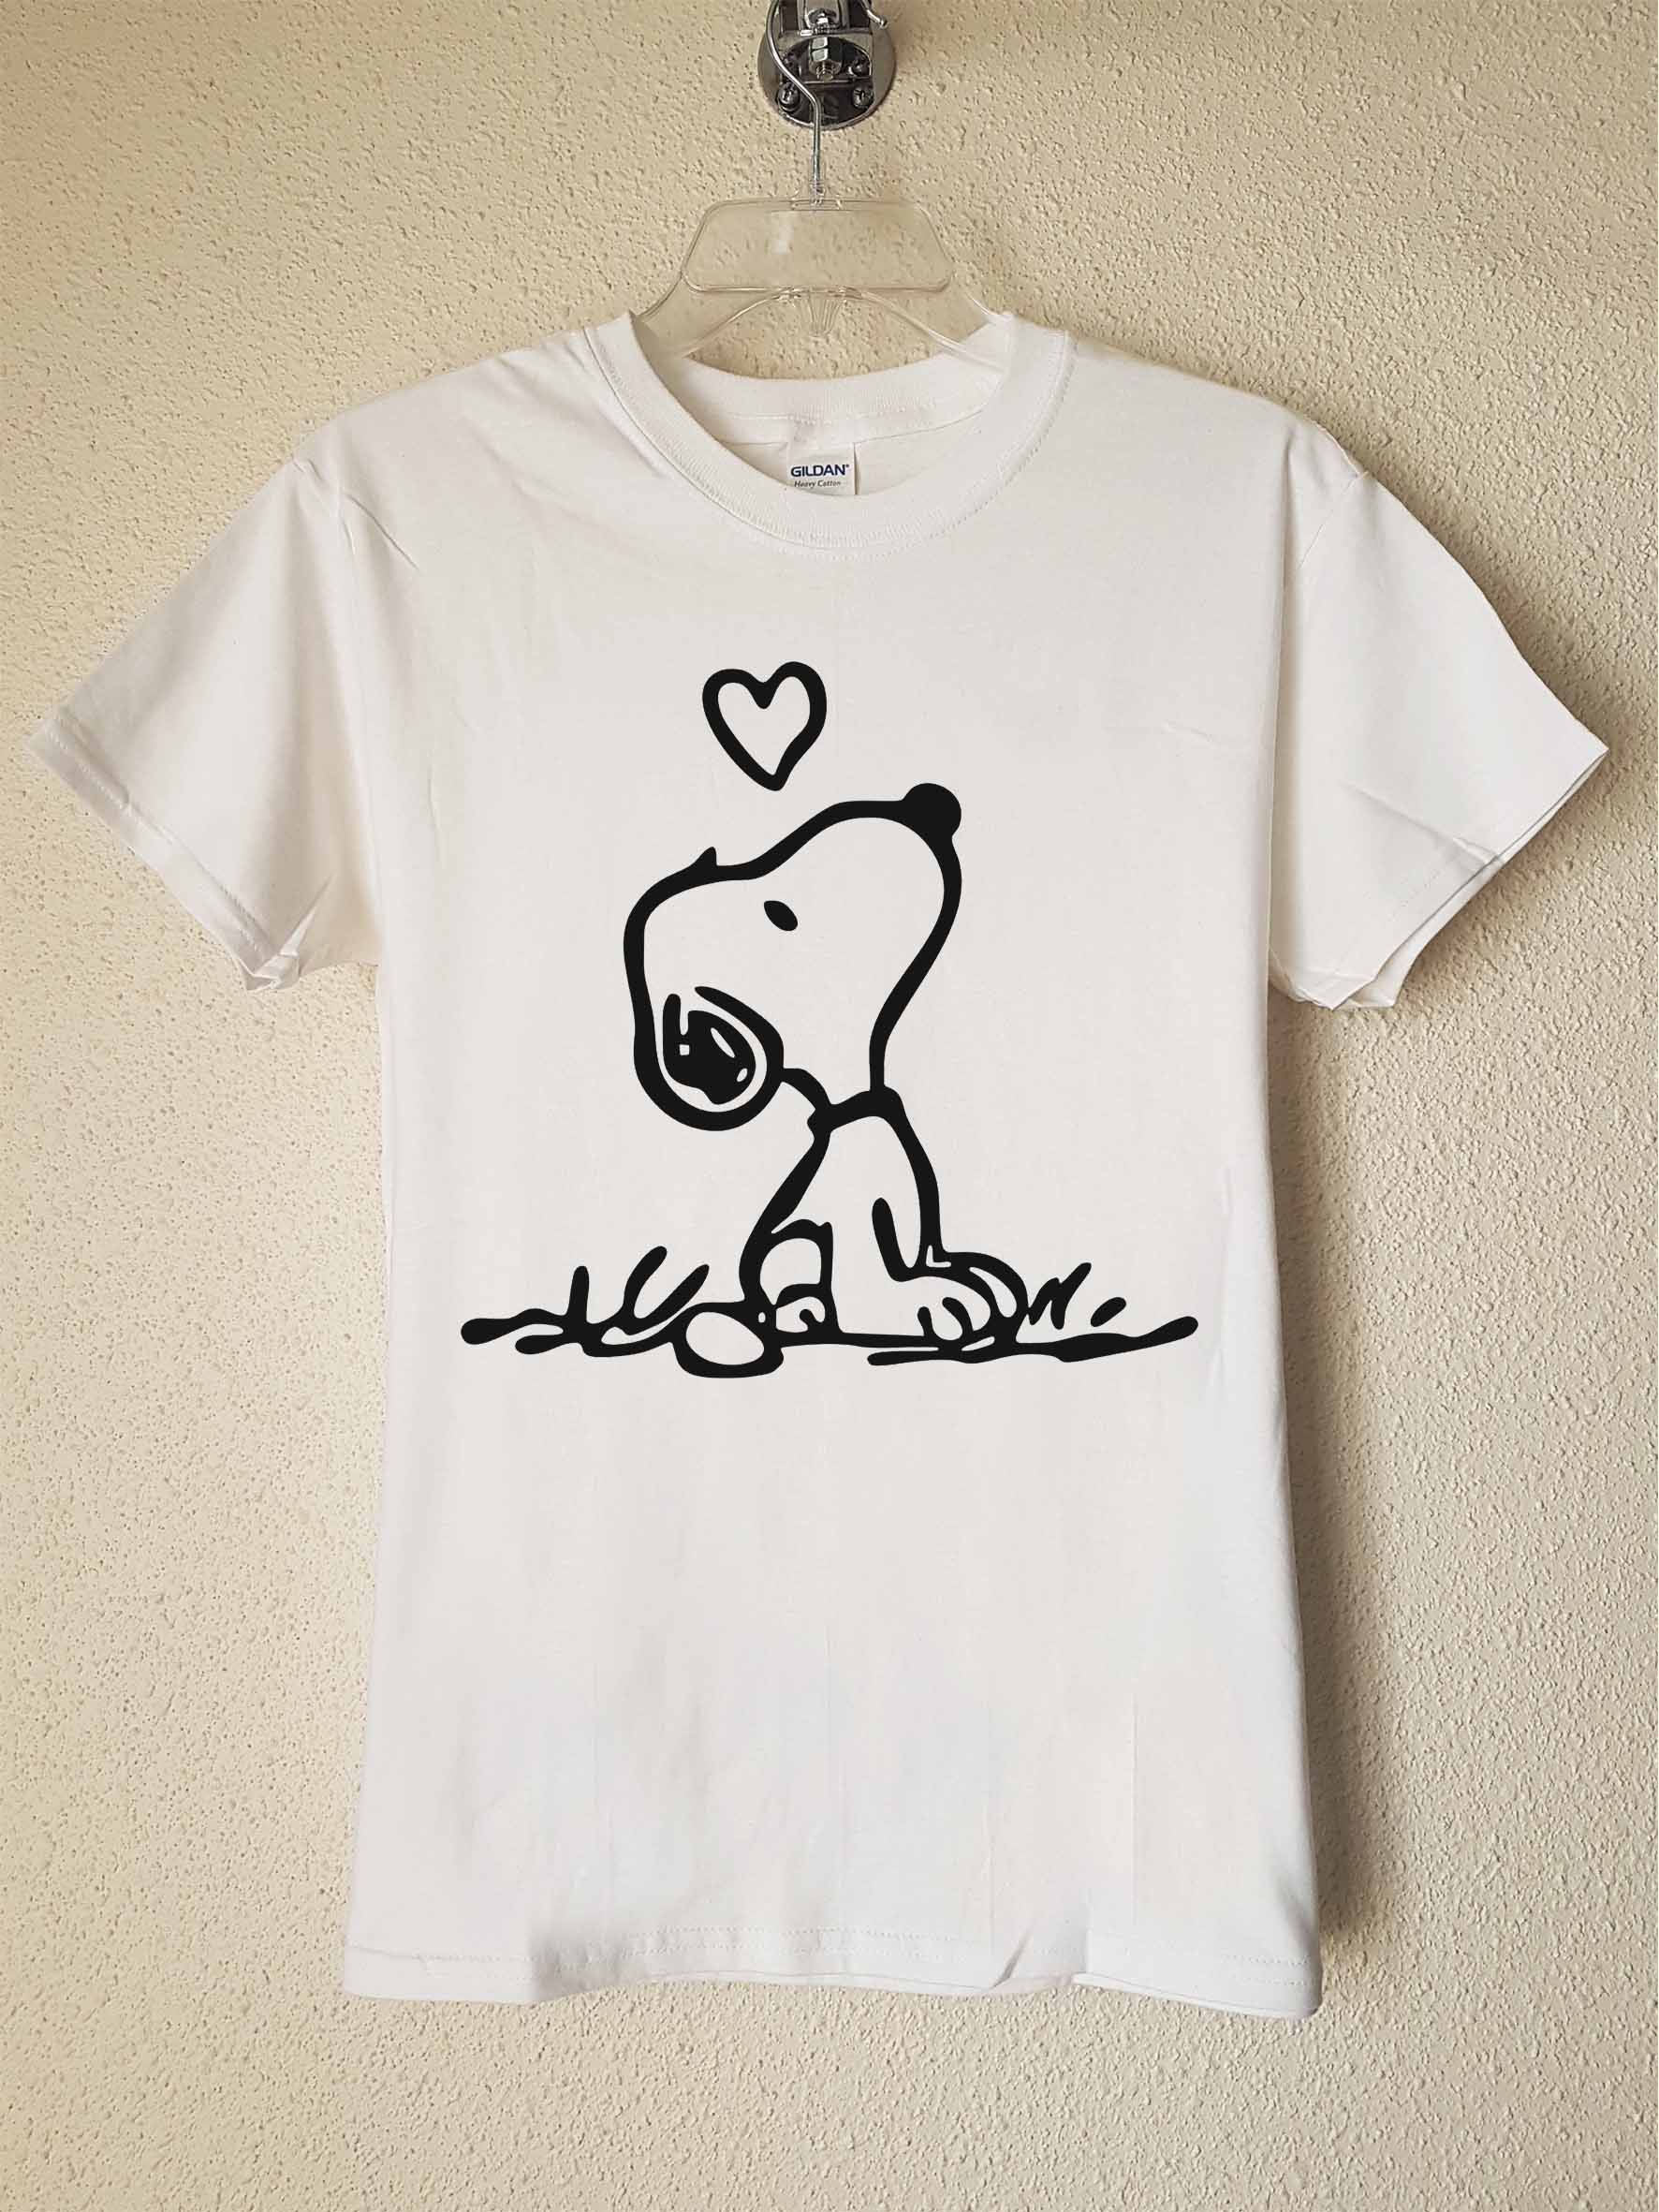 Snoopy Con Corazon Stencil Blanca - Poleradicto Poleras Estampadas con Diseño Personalizado